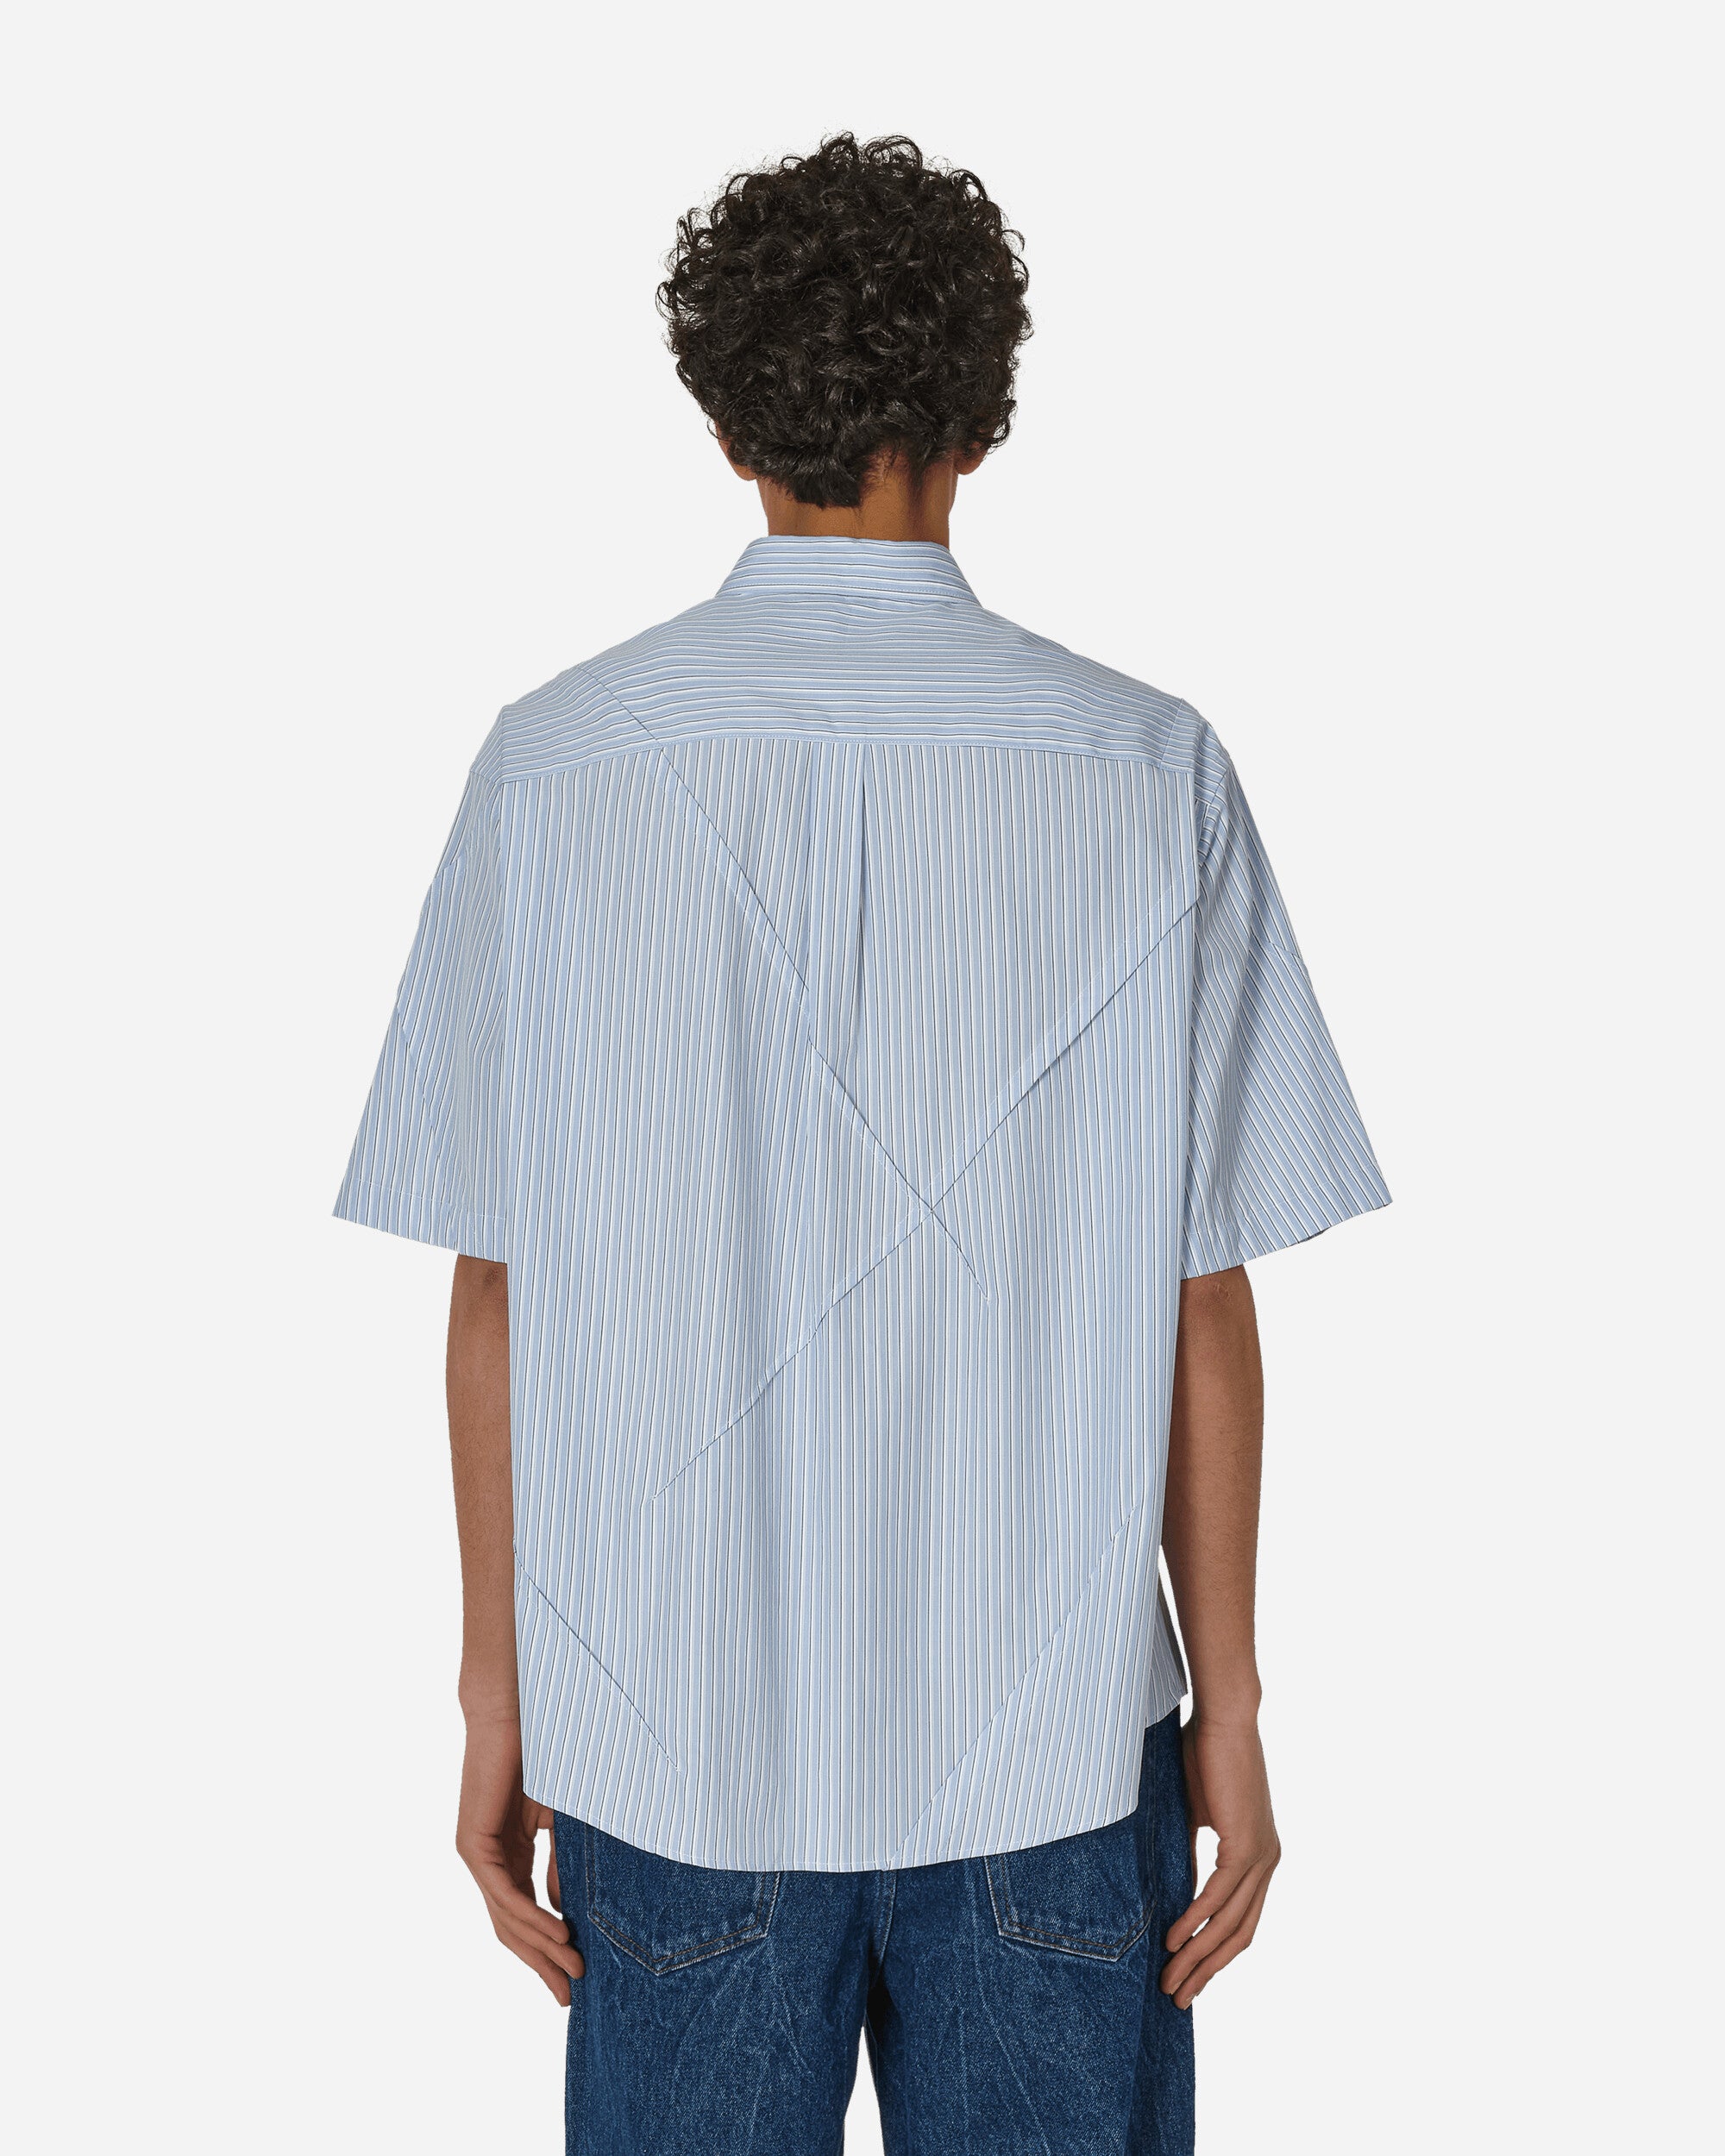 Undercover Short Sleeve Shirt Blue Stripes Shirts Shortsleeve Shirt UP1D4411-1 1